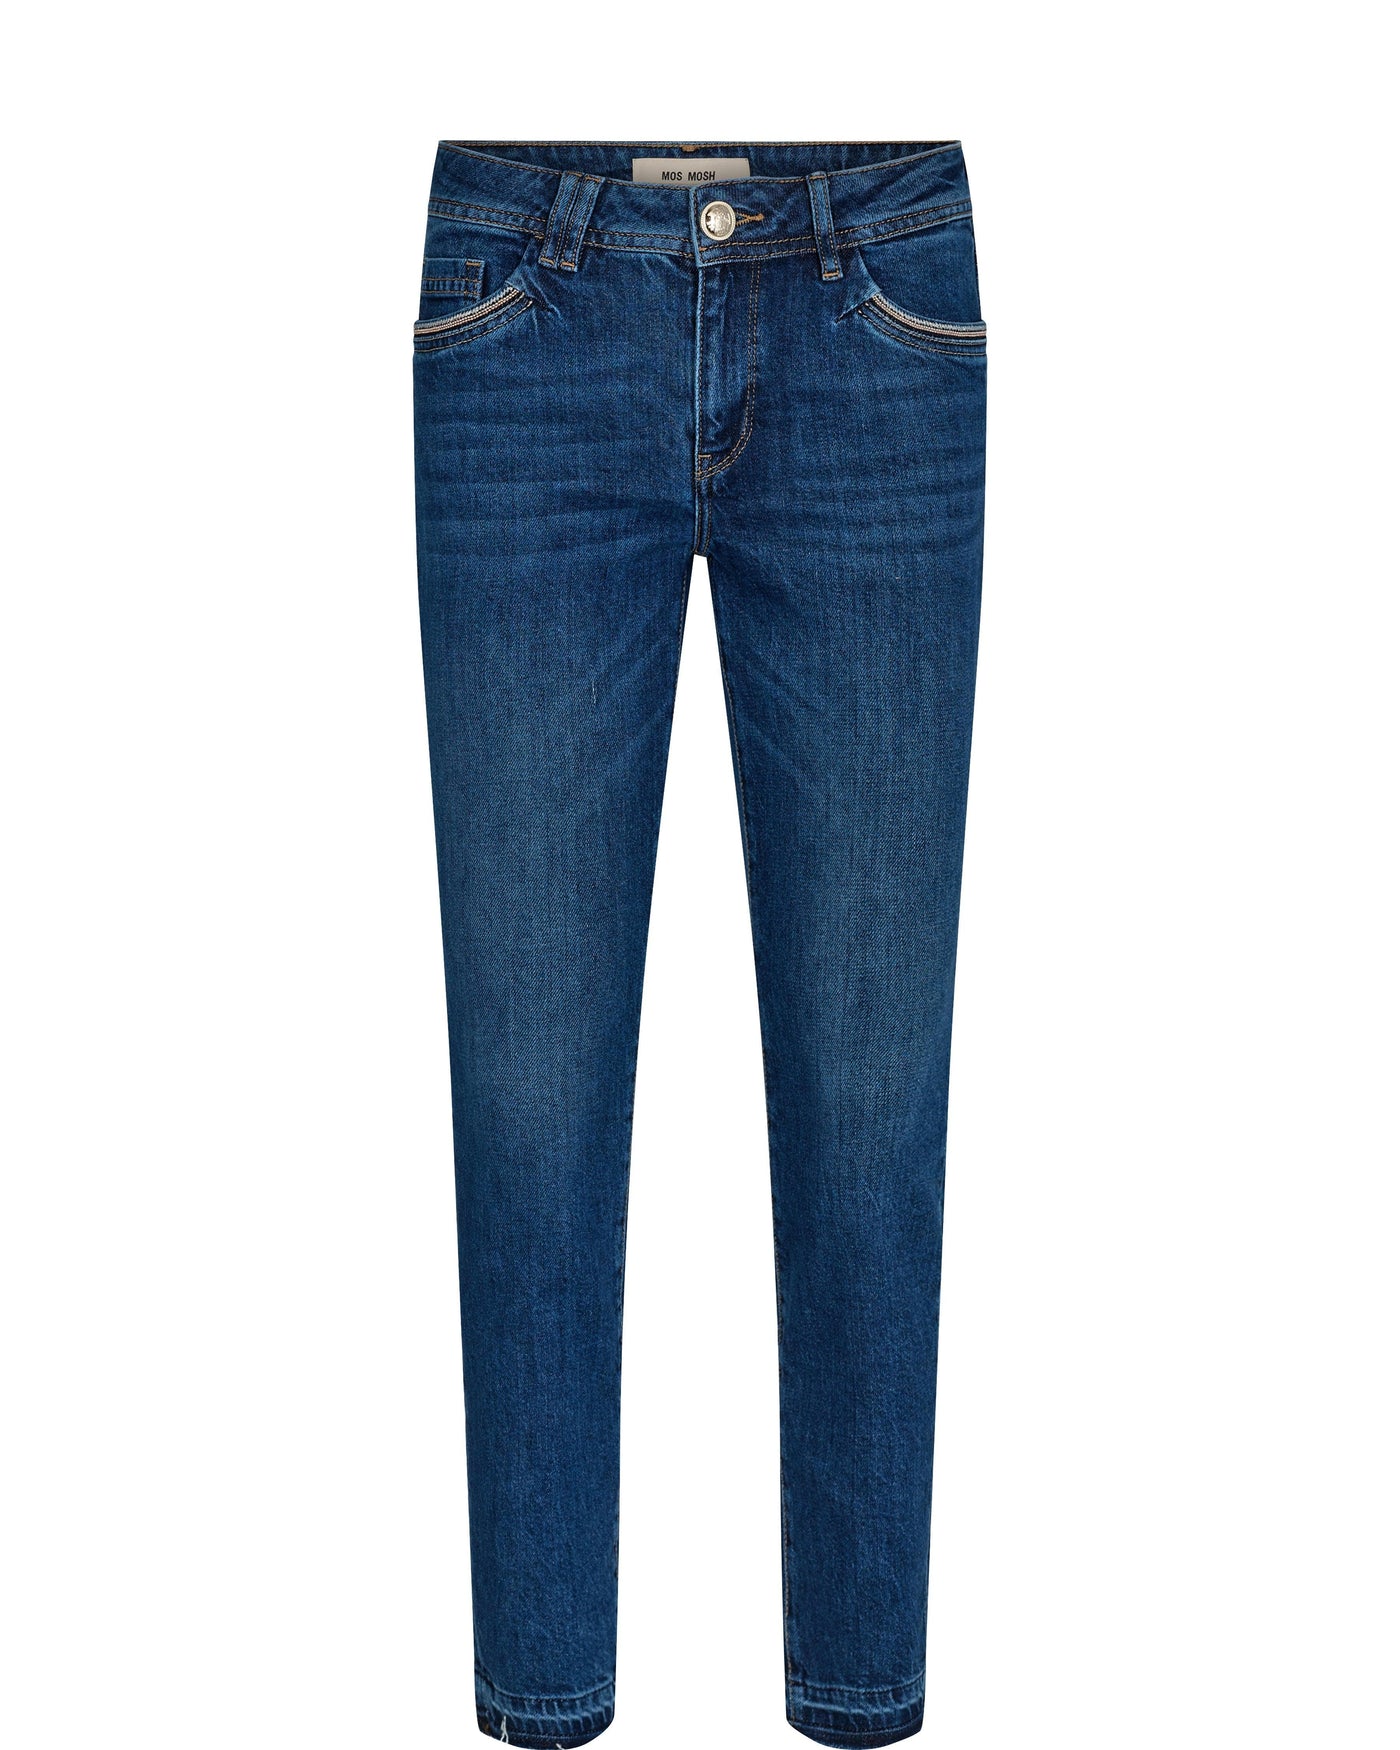 Sumner Adorn Jeans, Mid Blue